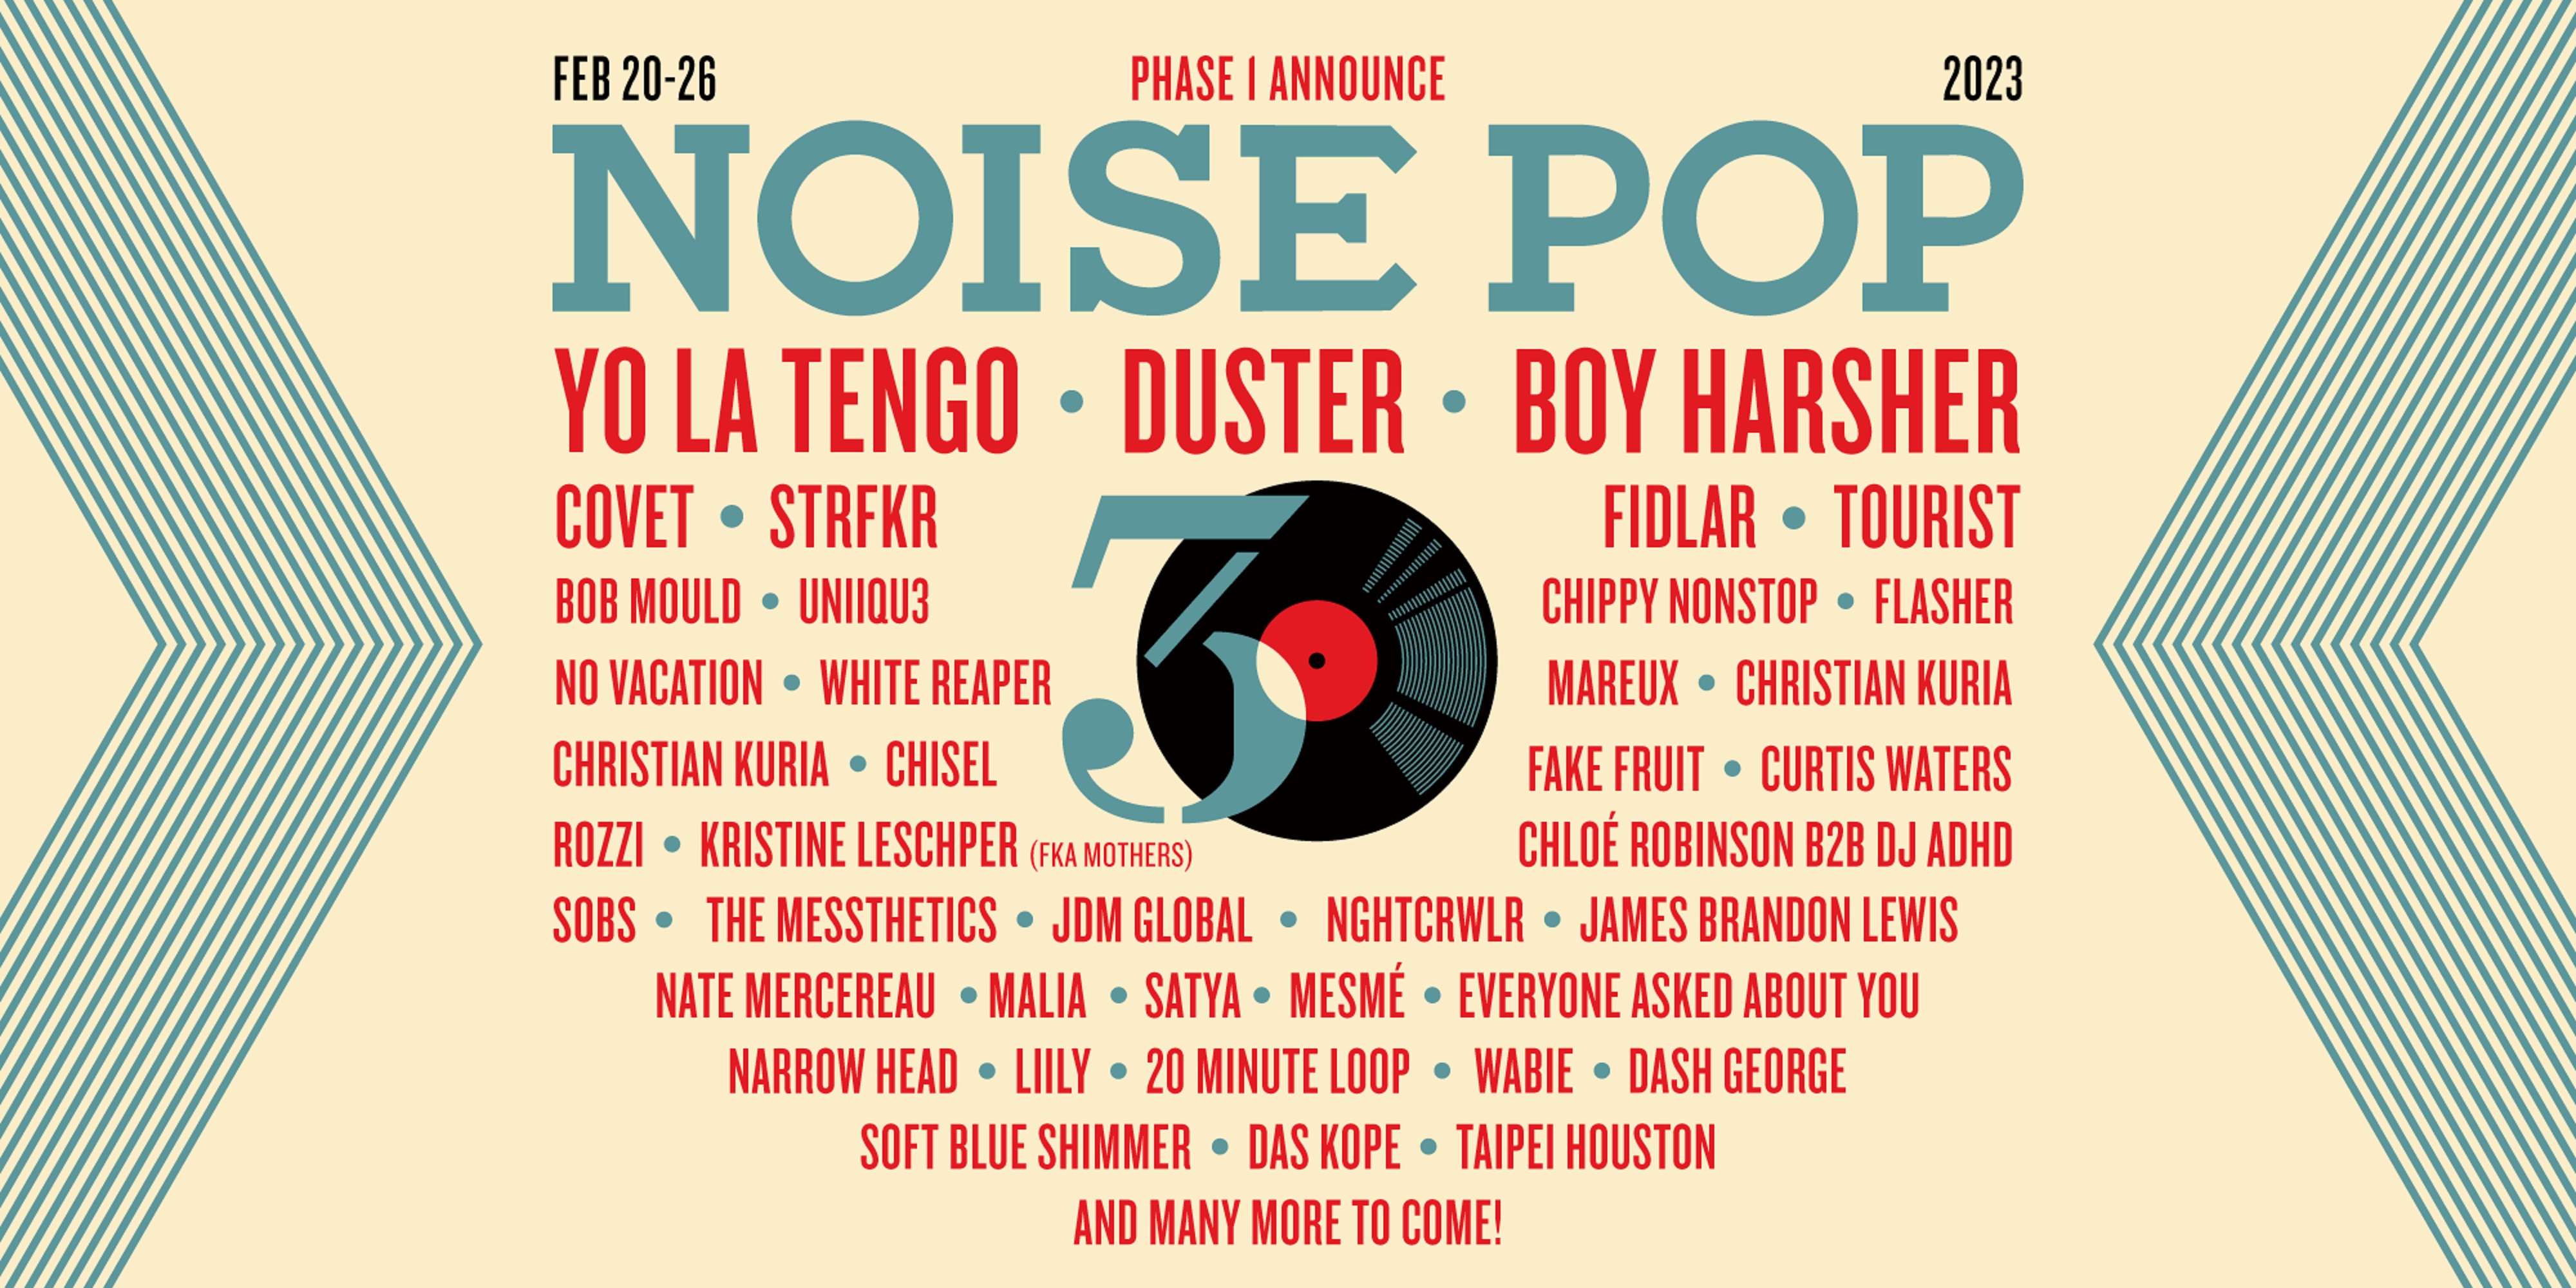 NOISE POP FESTIVAL ANNOUNCES 2023 MUSIC LINEUP